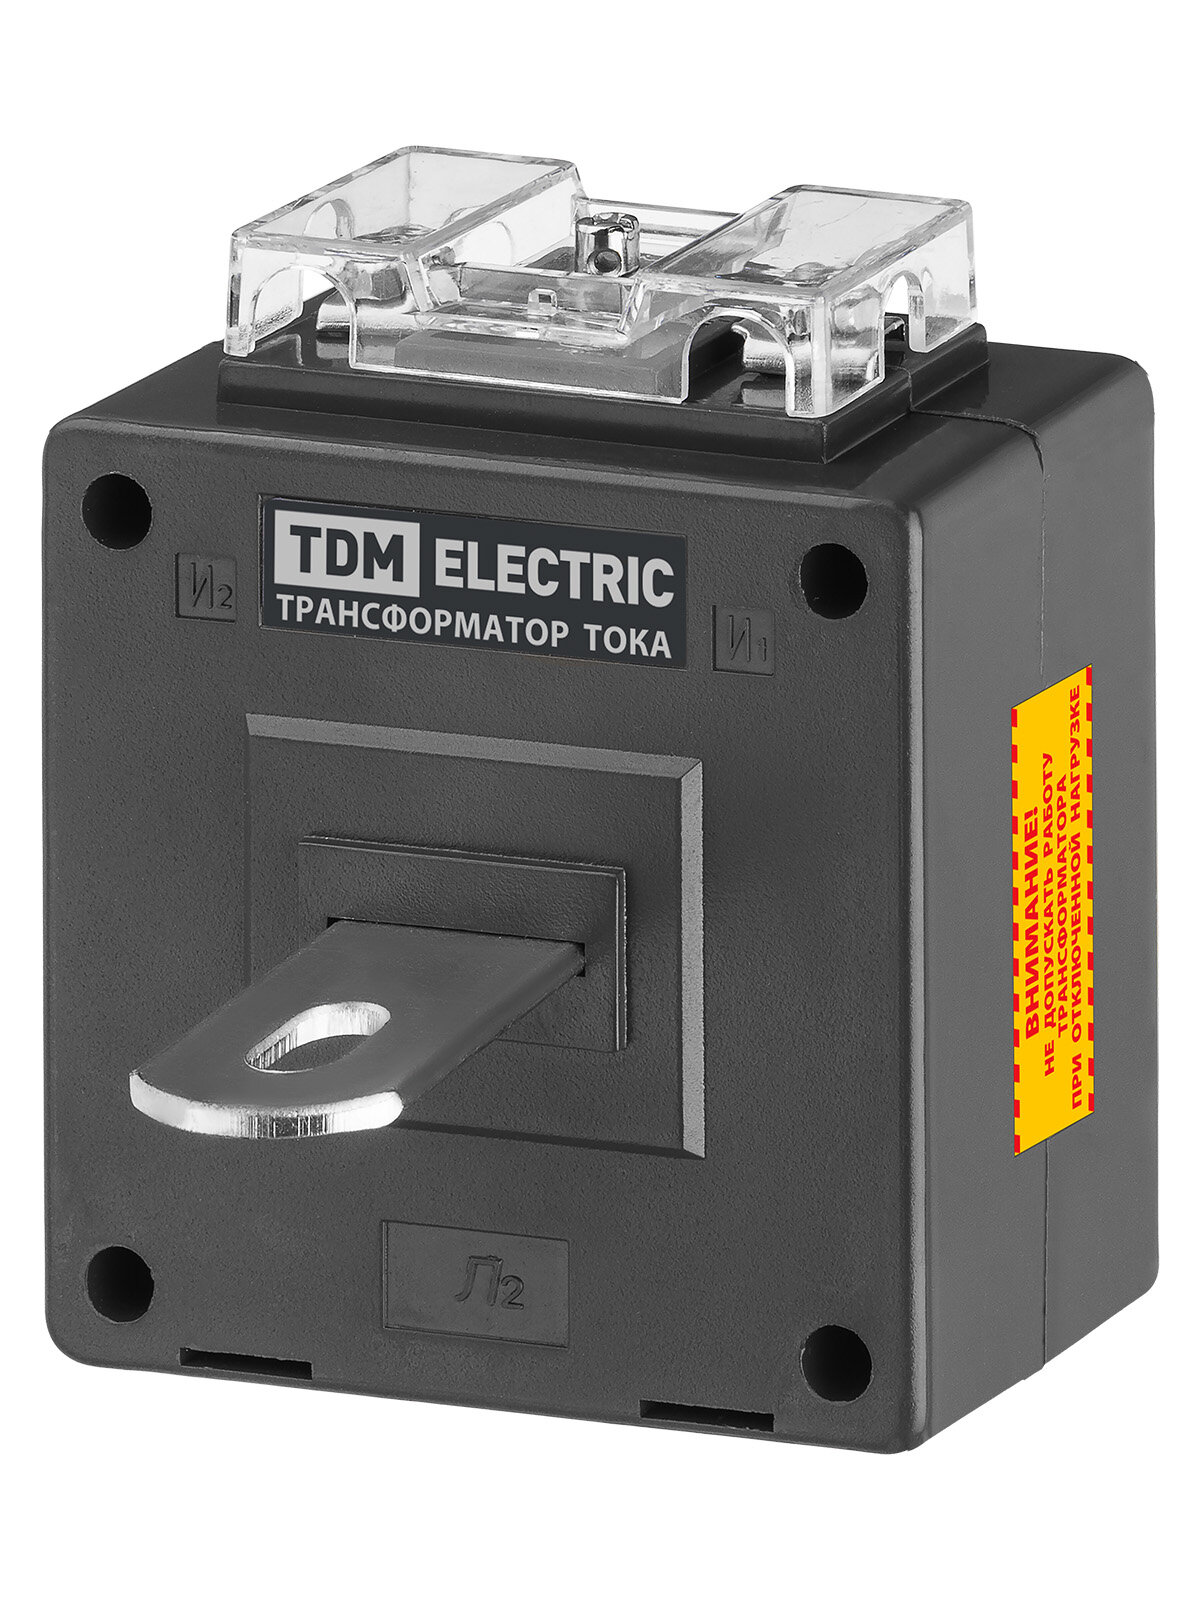 Трансформатор тока измерительный ТТН-Ш 200/5- 5VA/0,5-Р TDM